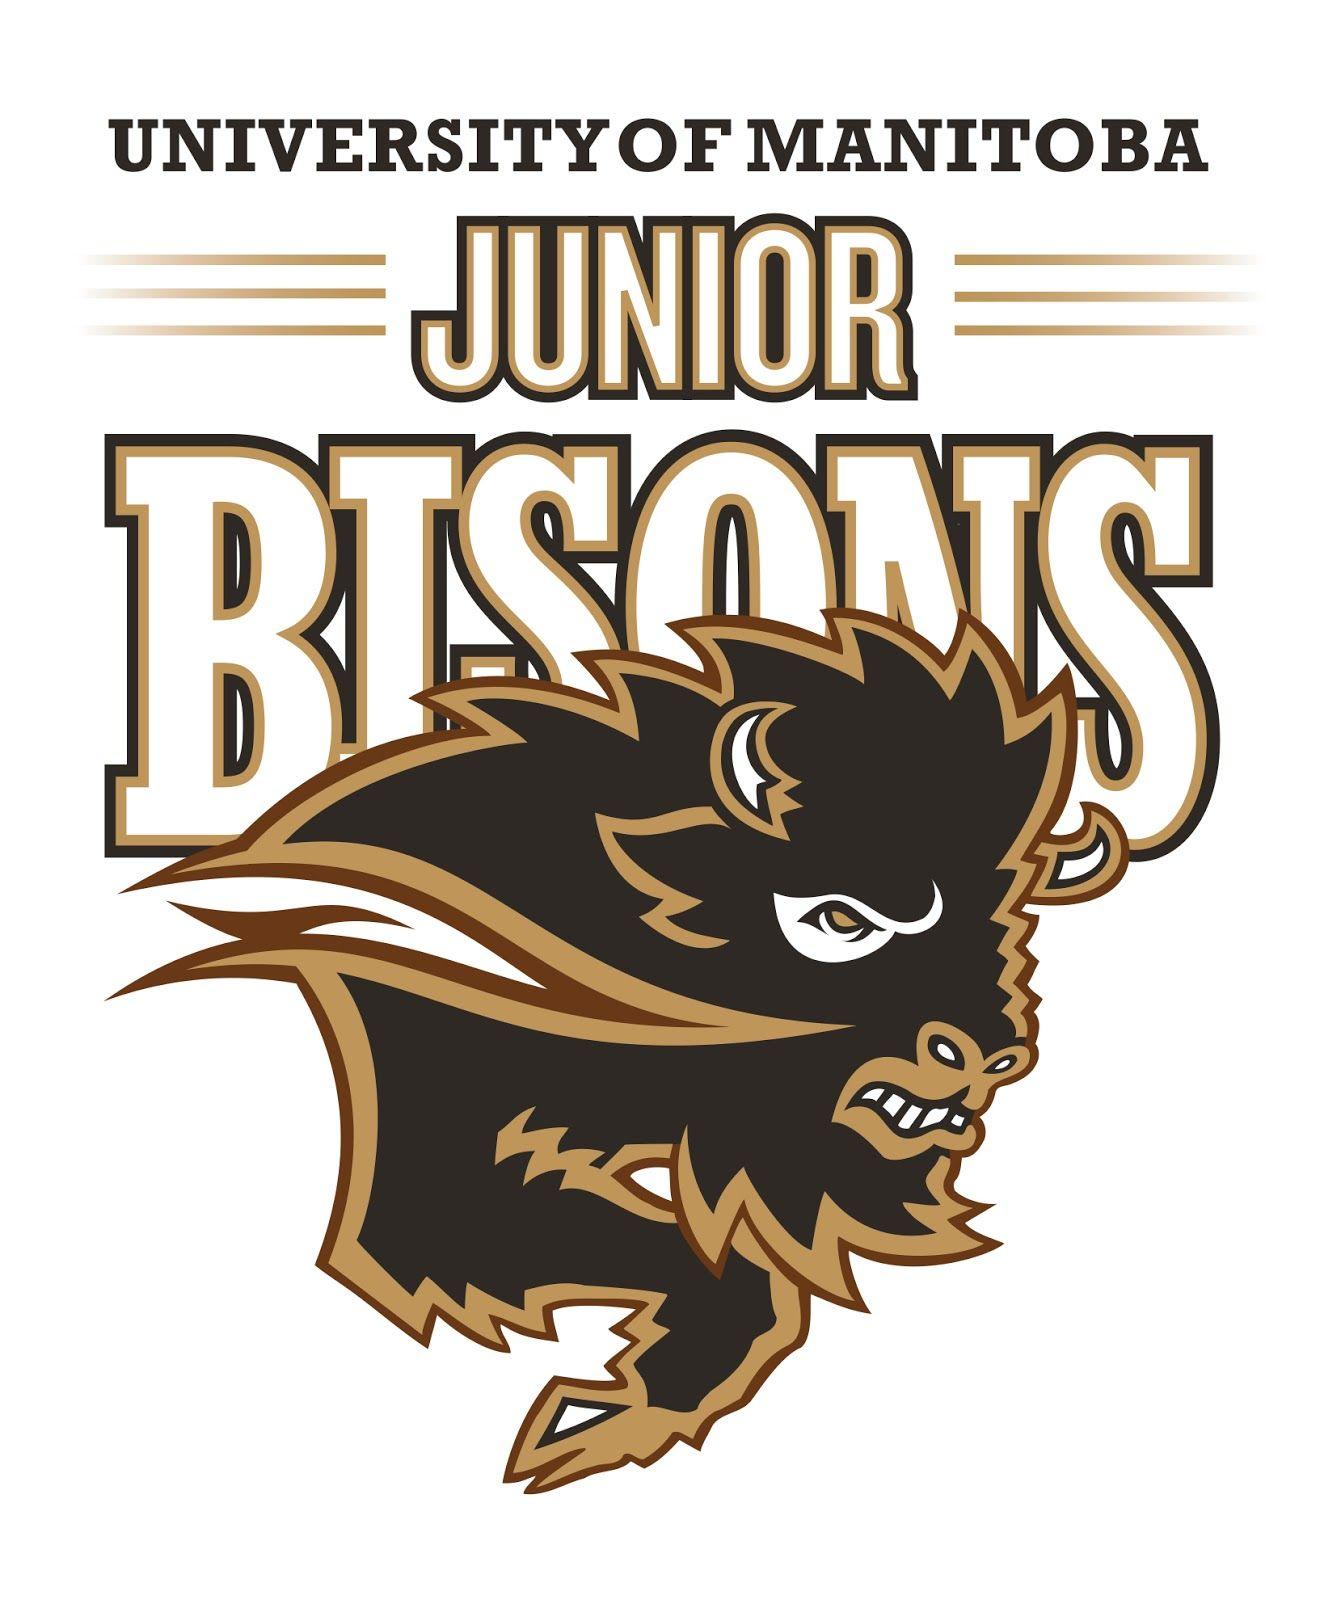 Bisons Basketball Logo - University of Manitoba Junior Bison Girls Basketball Club ...